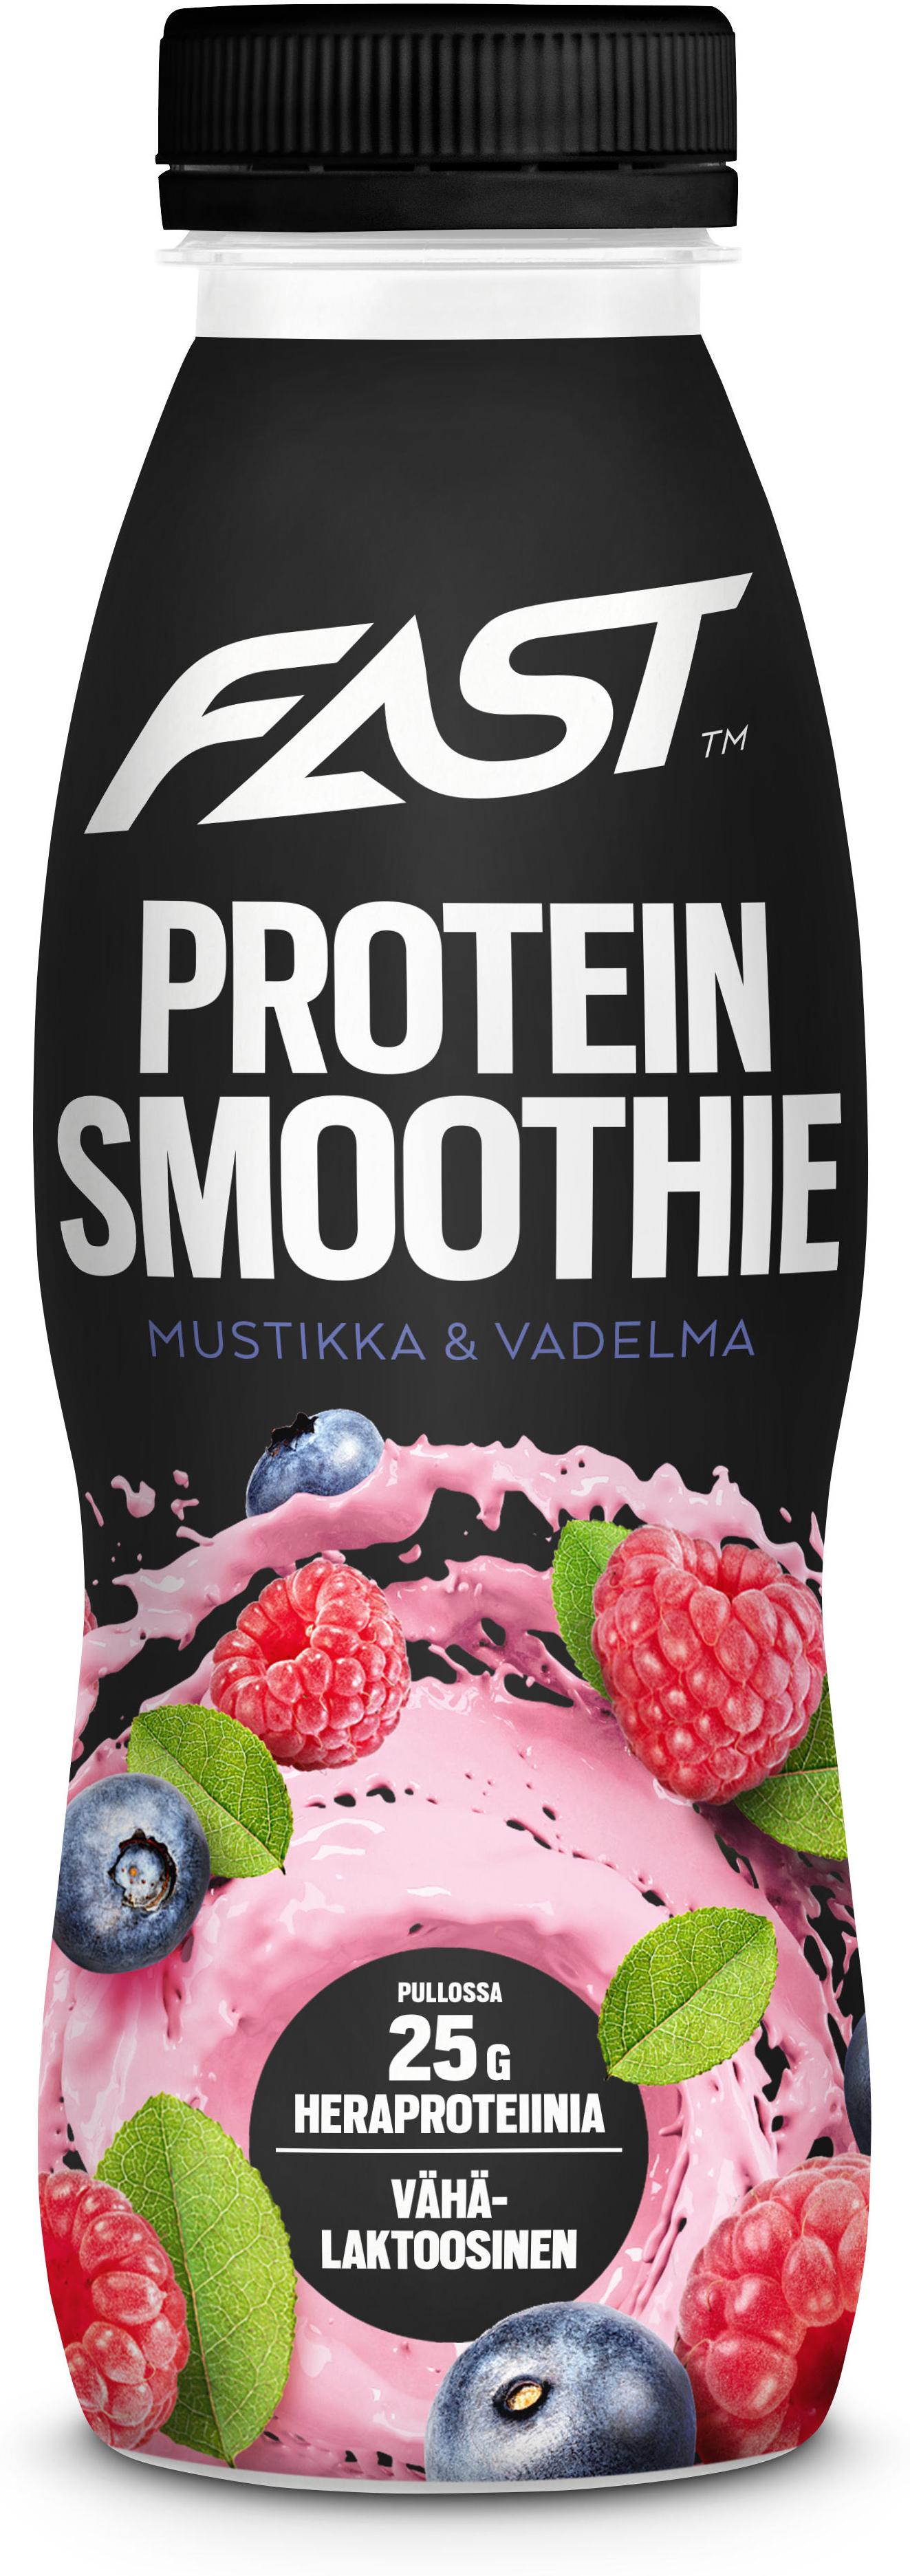 Top 52+ imagen fast protein smoothie